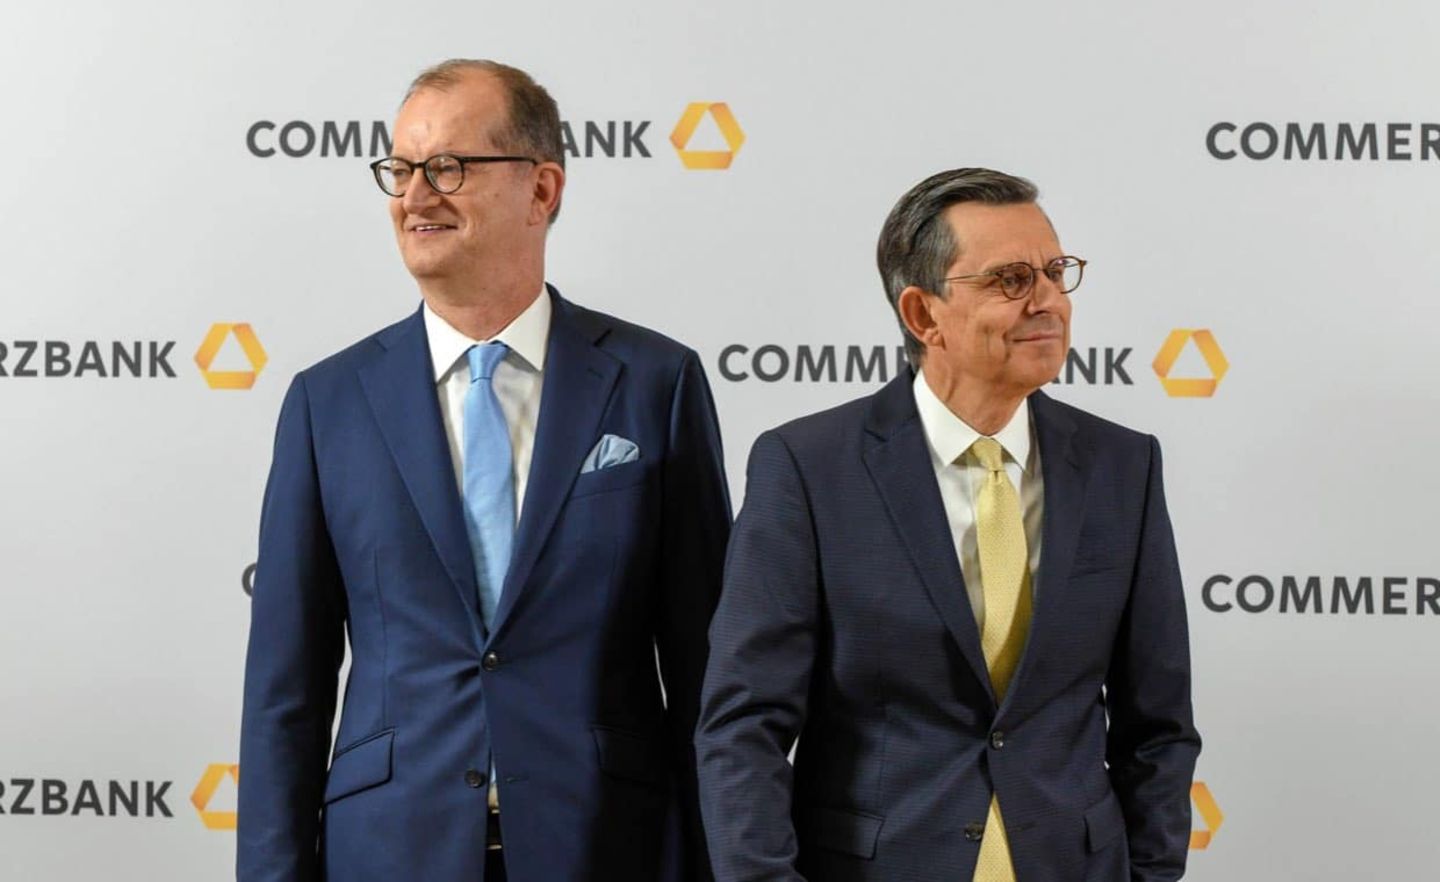 Nachfolger gesucht: Commerzbank-Chef Zielke und Aufsichtratschef Schmittmann hinterlassen ein Institut in der Krise